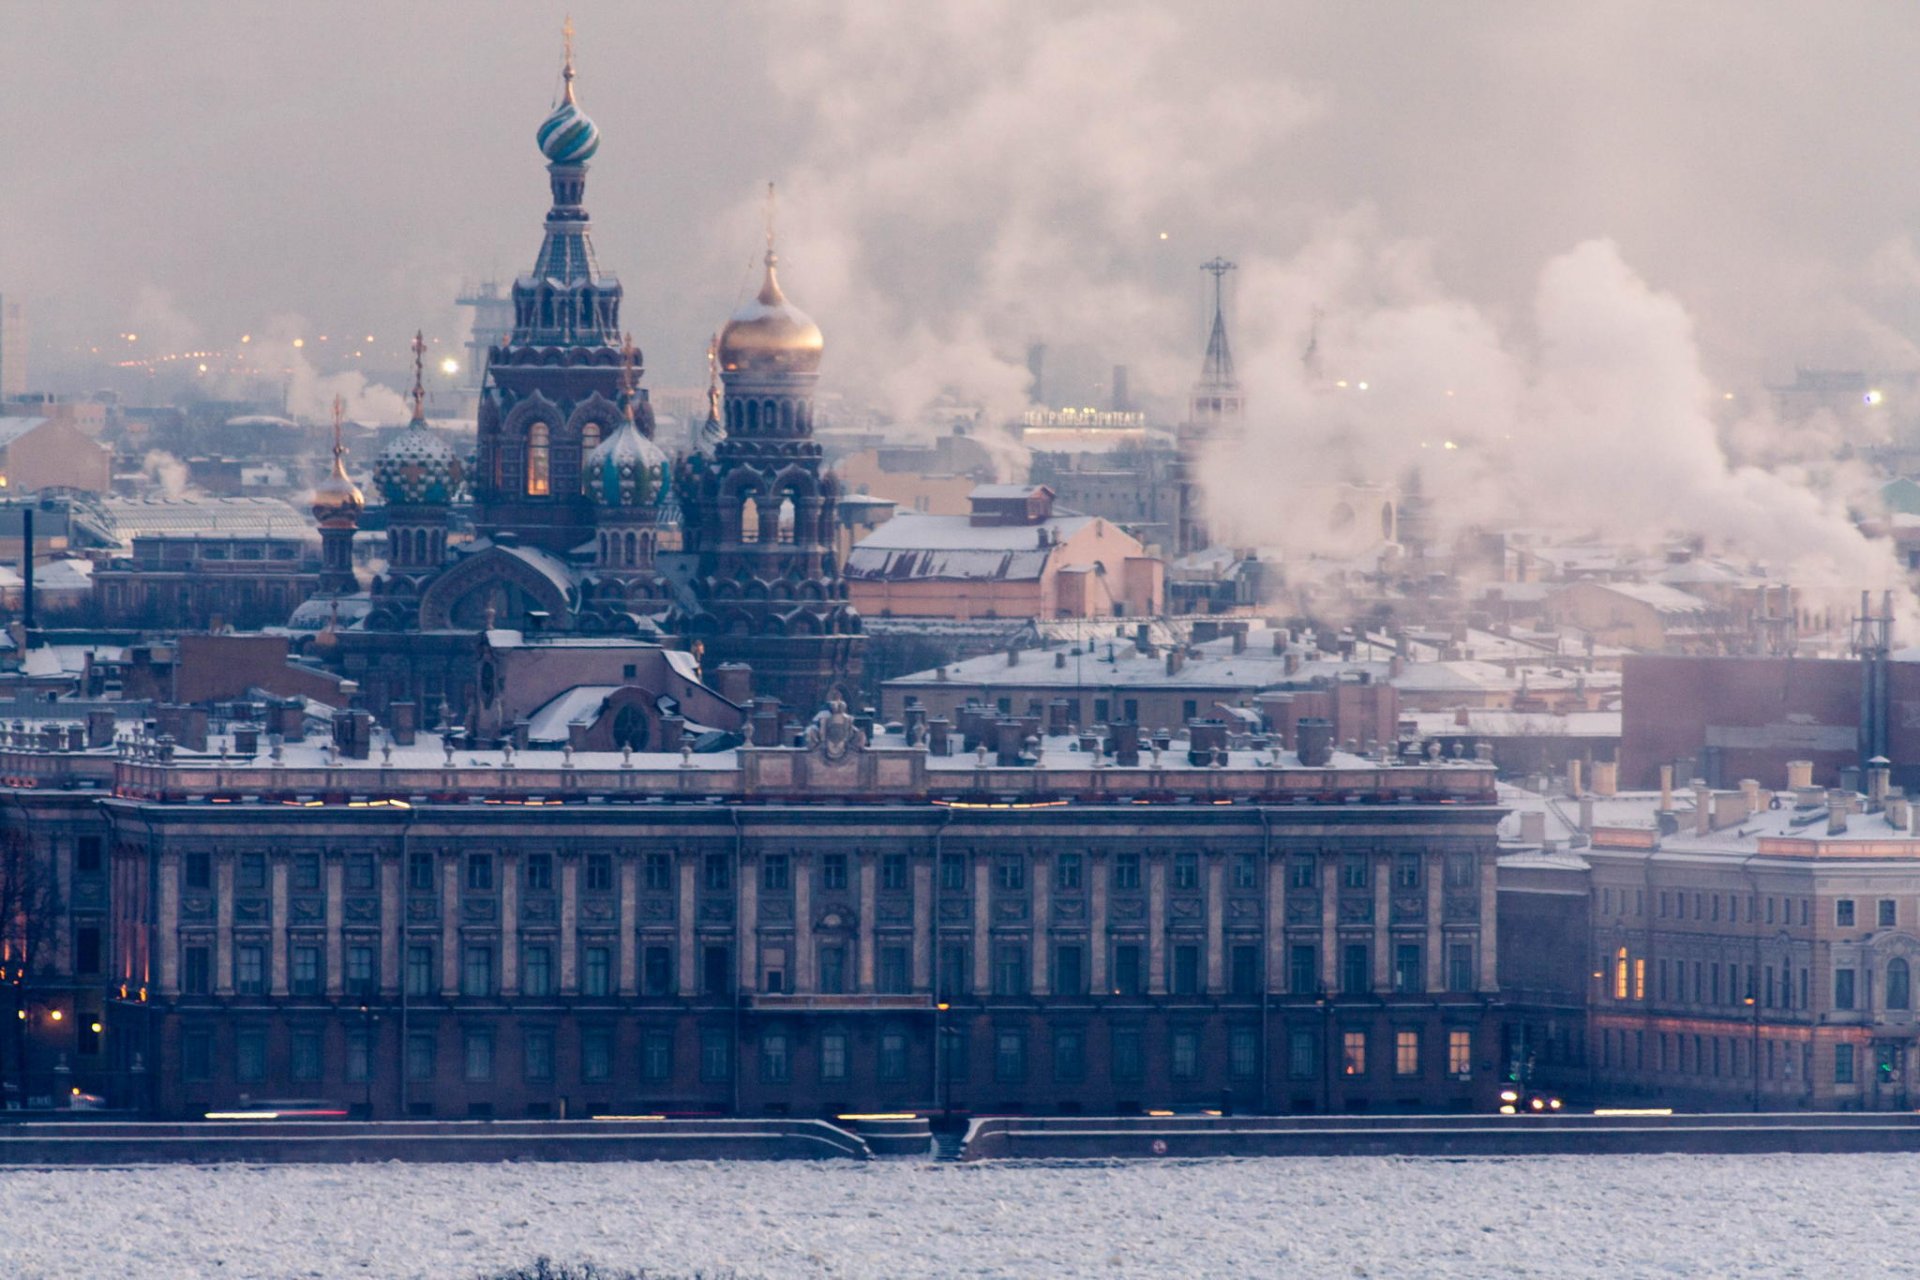 Санкт-Петербург / St. Petersburg